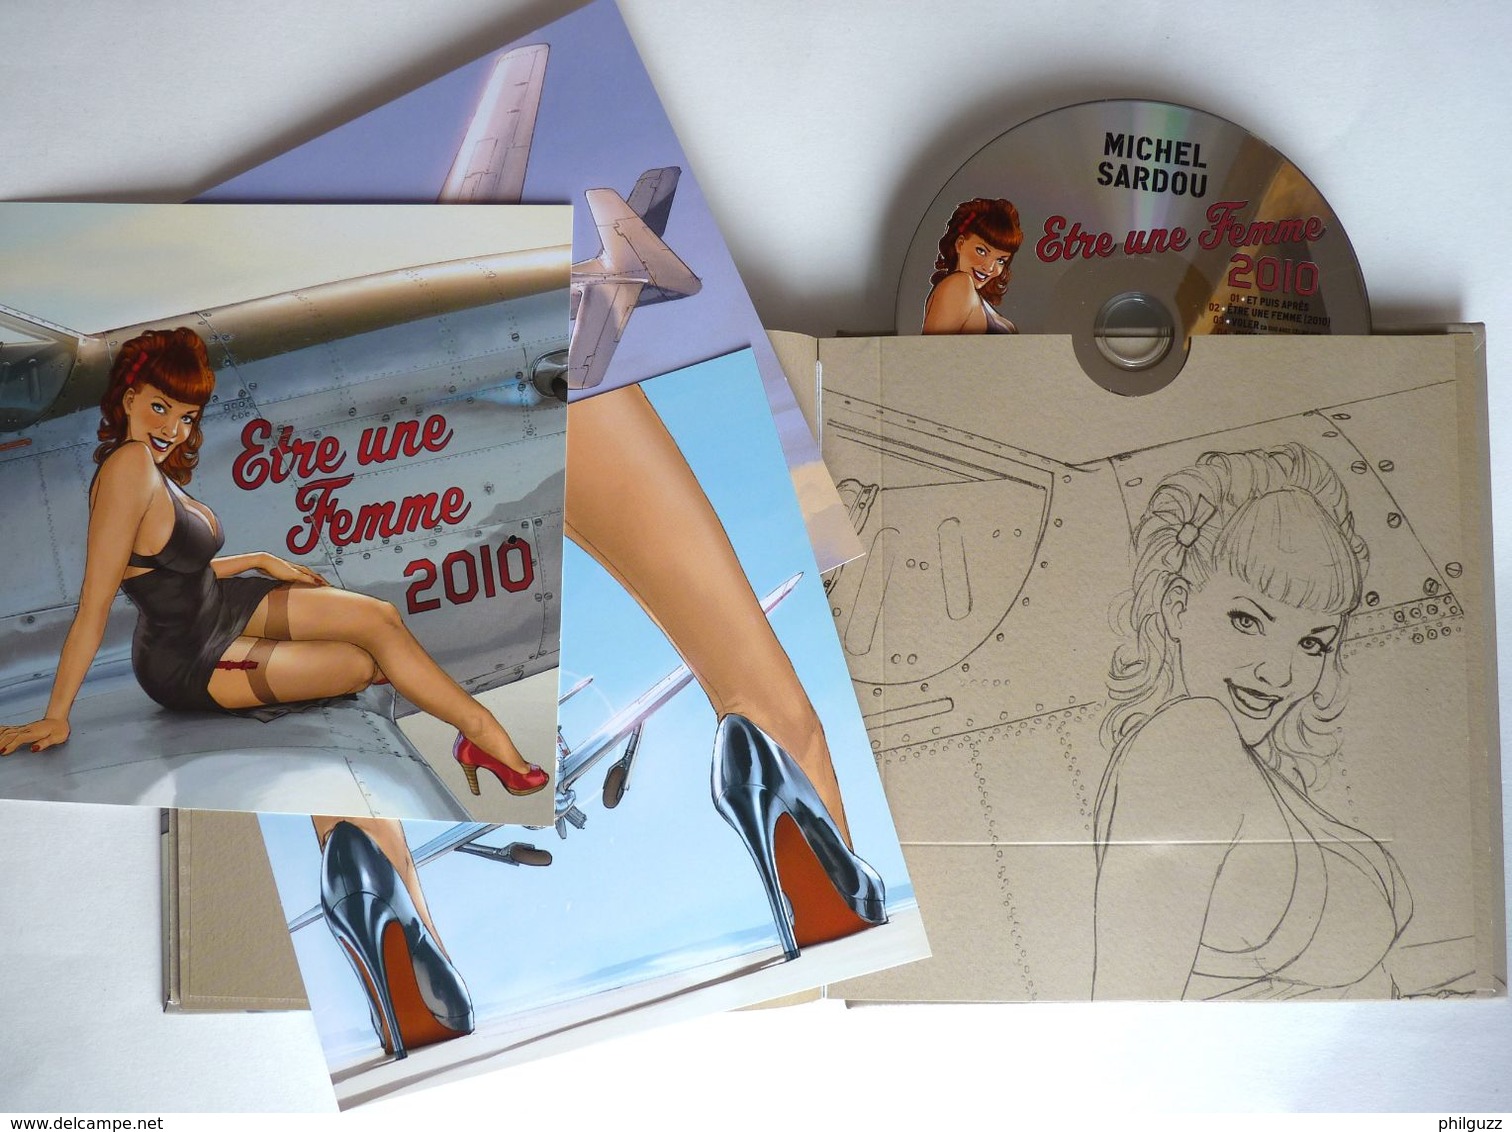 LIVRE CD COLLECTOR édition Limité ETRE UNE FEMME Michel SARDOU - HUGAULT 2010 AVEC 3 XL ET UN CD - Disques & CD